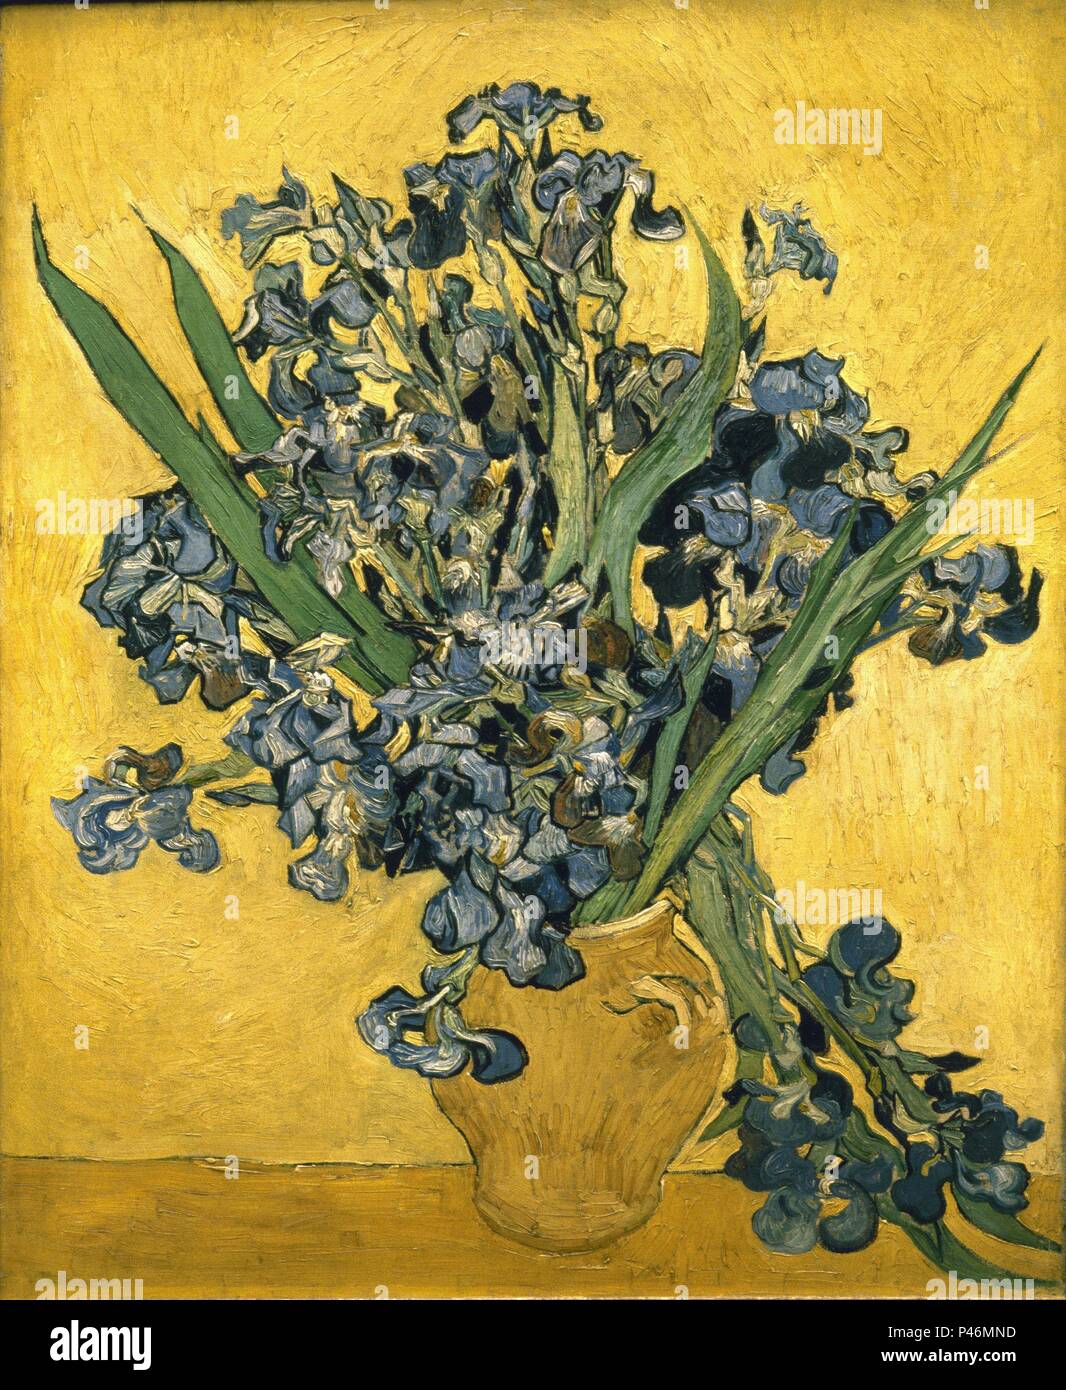 Niederländische Schule. Vase mit Iris vor einem gelben Hintergrund. 1890. Öl auf Leinwand (92 x 73,5 cm). Amsterdam, Van Gogh Museum. Autor: Vincent van Gogh (1853-1890). Ort: Van Gogh Museum, Amsterdam, HOLANDA. Stockfoto